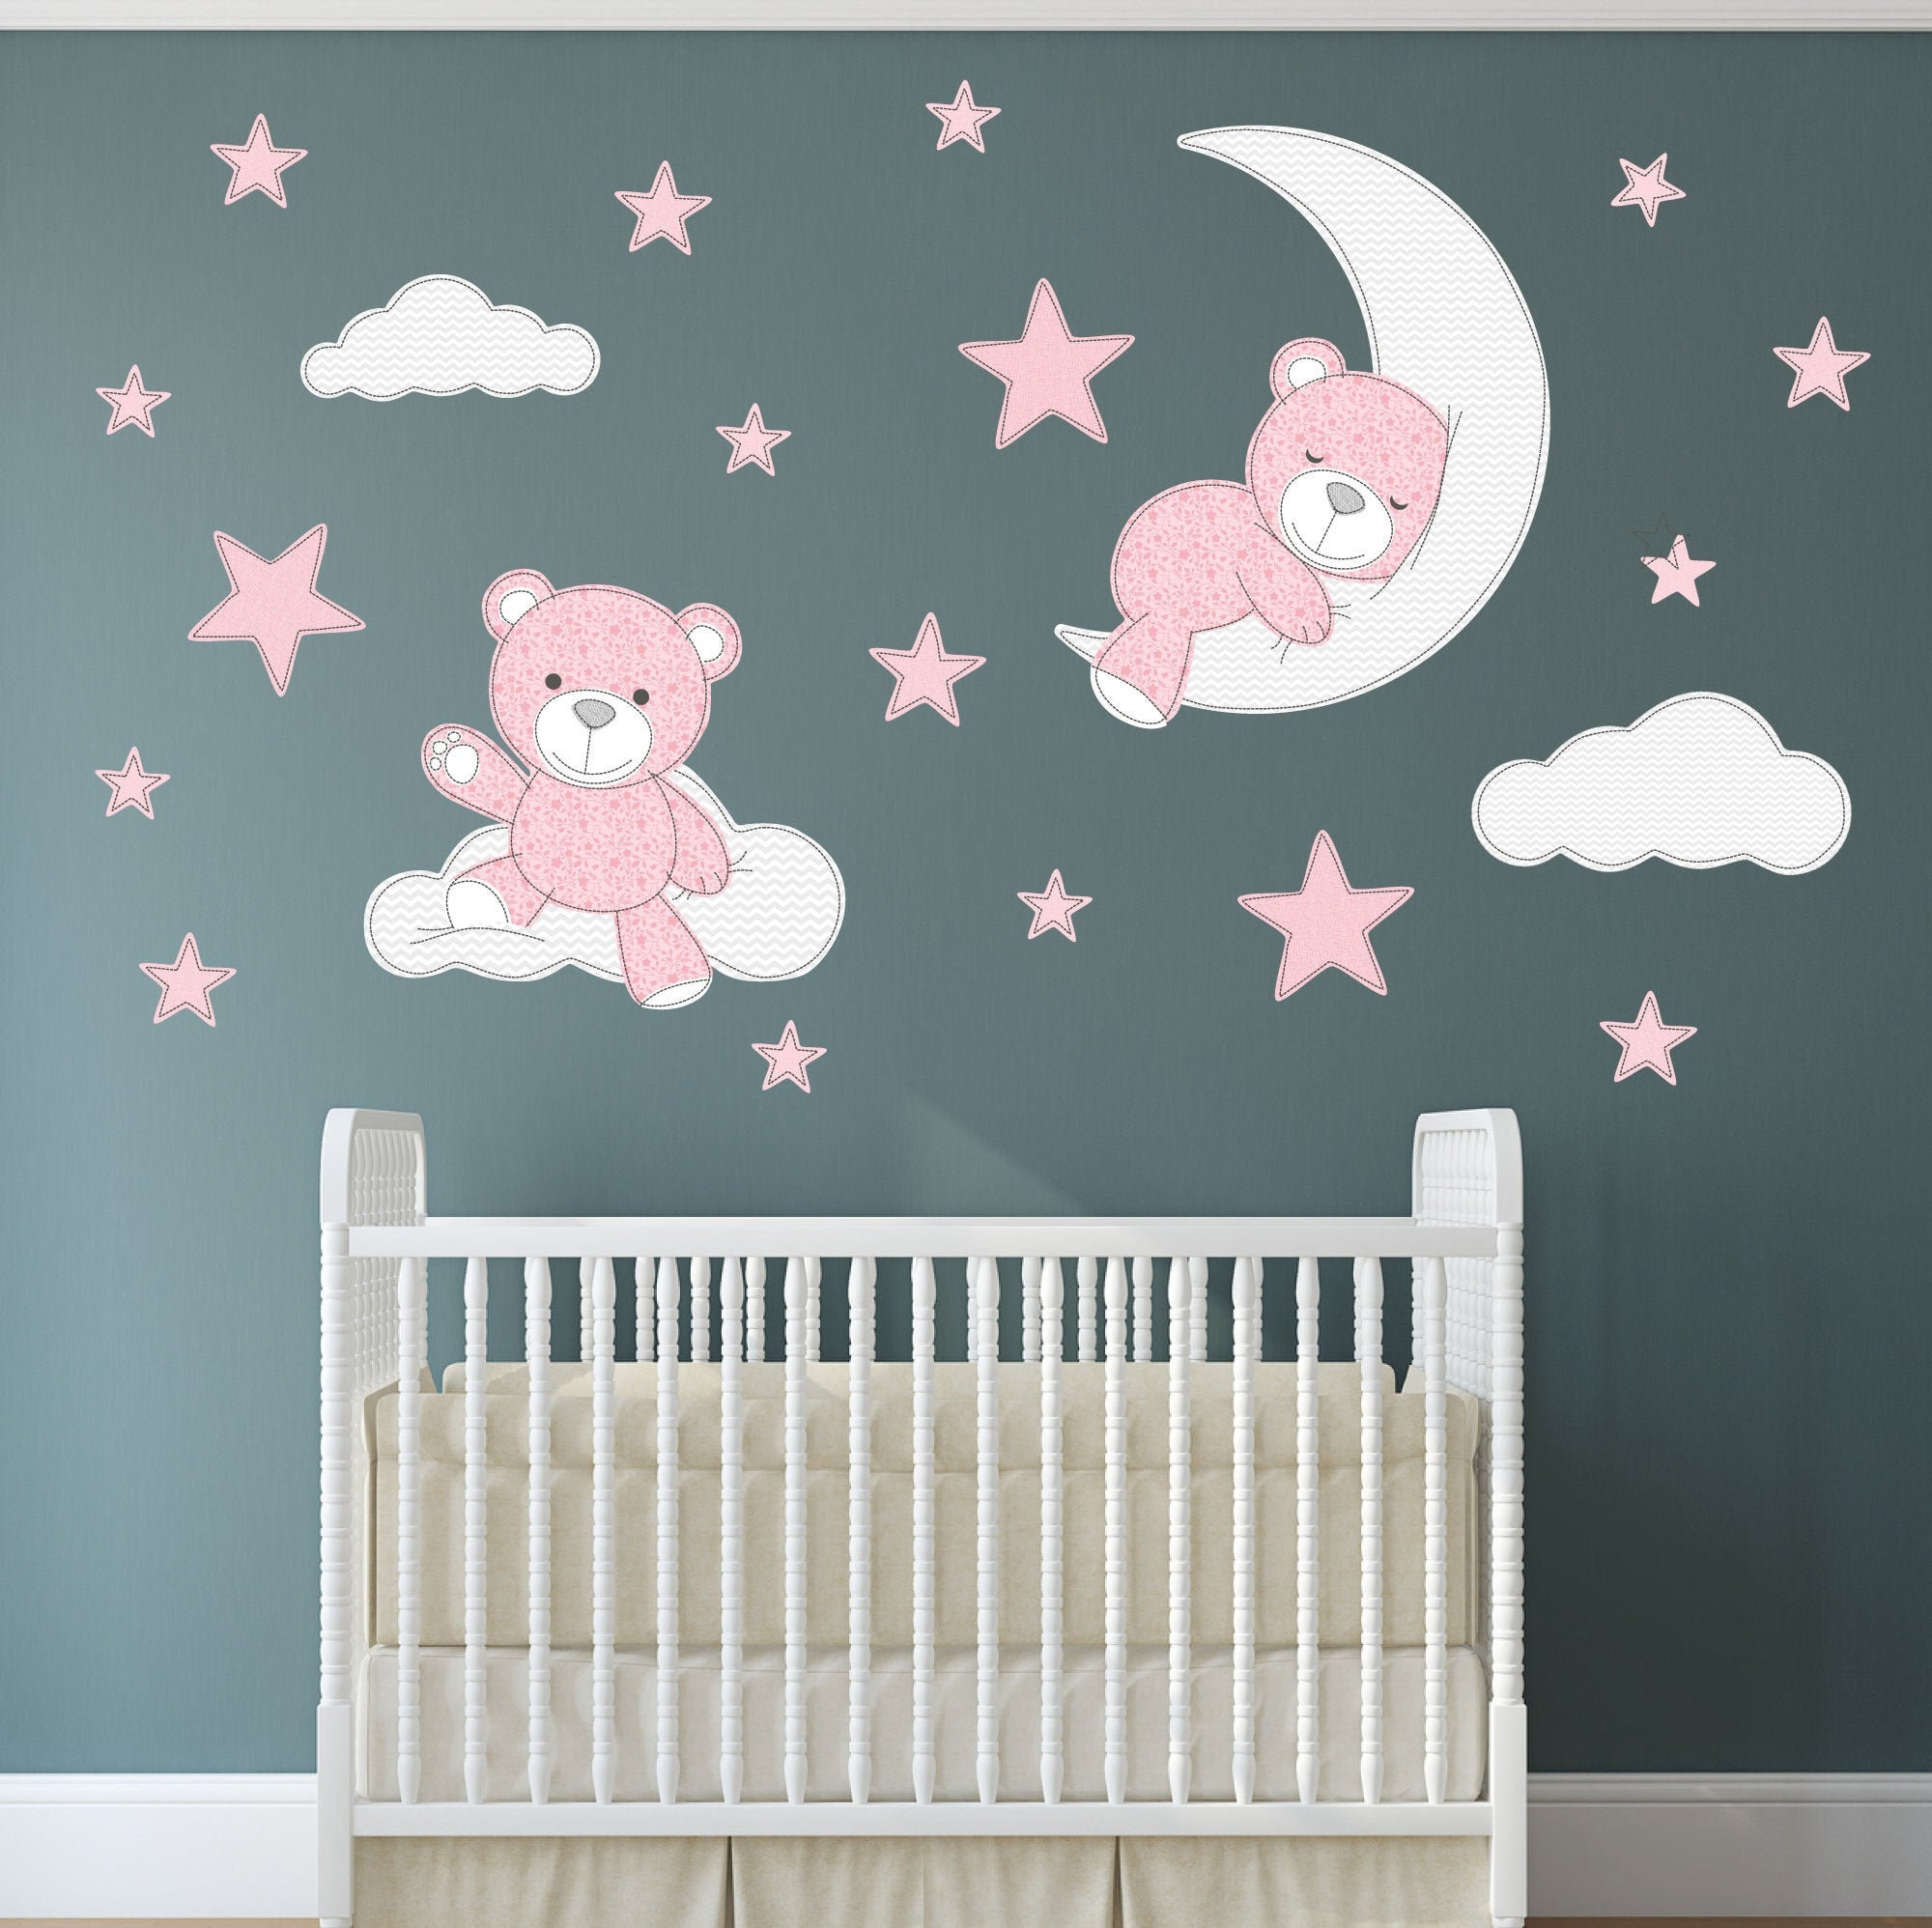 Pink Teddy Bear Vinyl Wall Decals Sticker Mural Paper Nursery Home Art Decor 